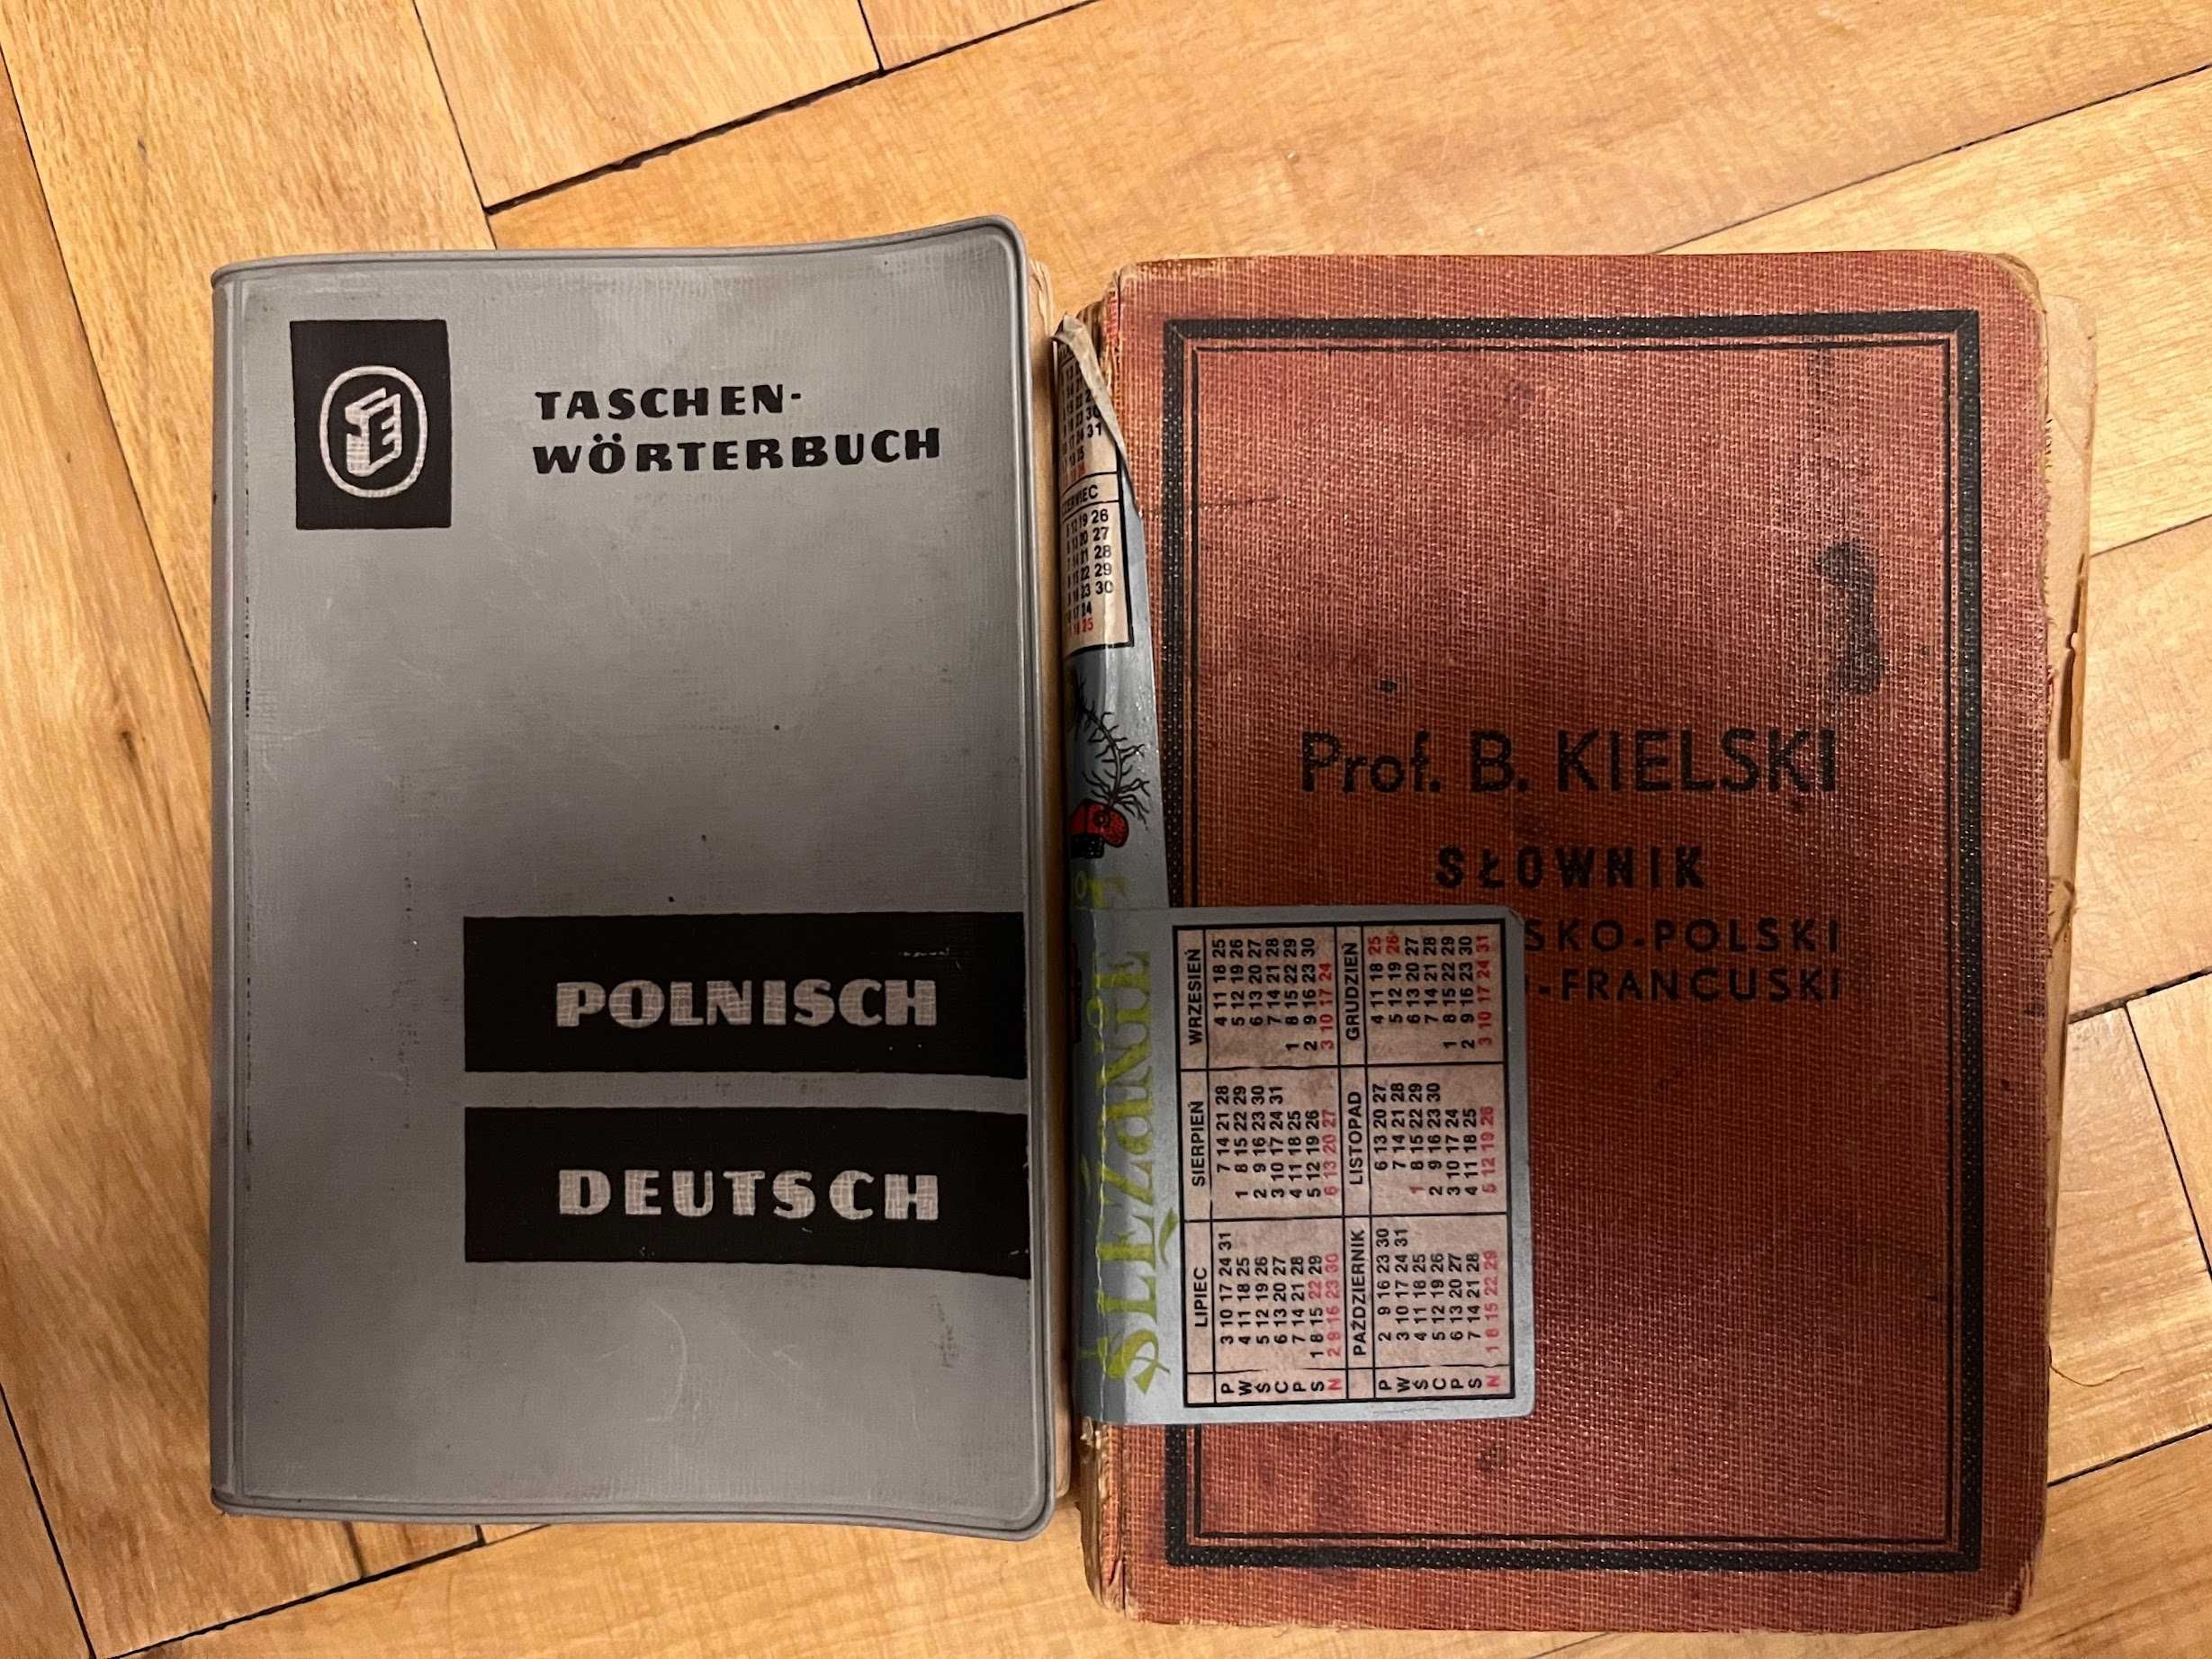 2 słowniki - niemiecki (Jakowczyk, Reinholz) i francuski (Kielski)